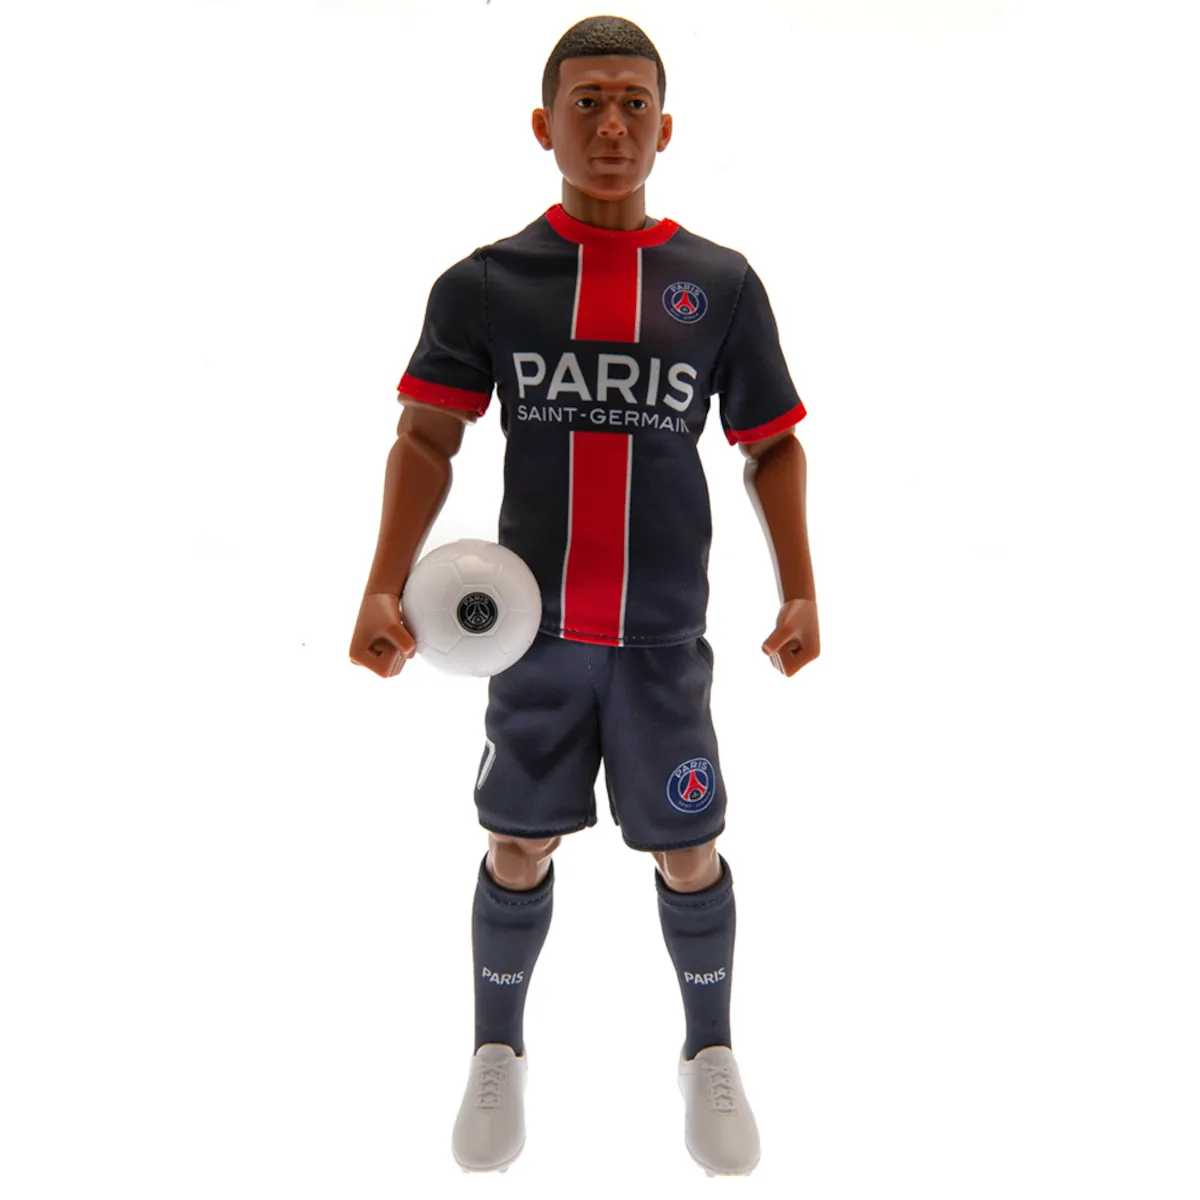 TM-03861 Paris Saint-Germain FC Kylian Mbappé 30cm Action Figure